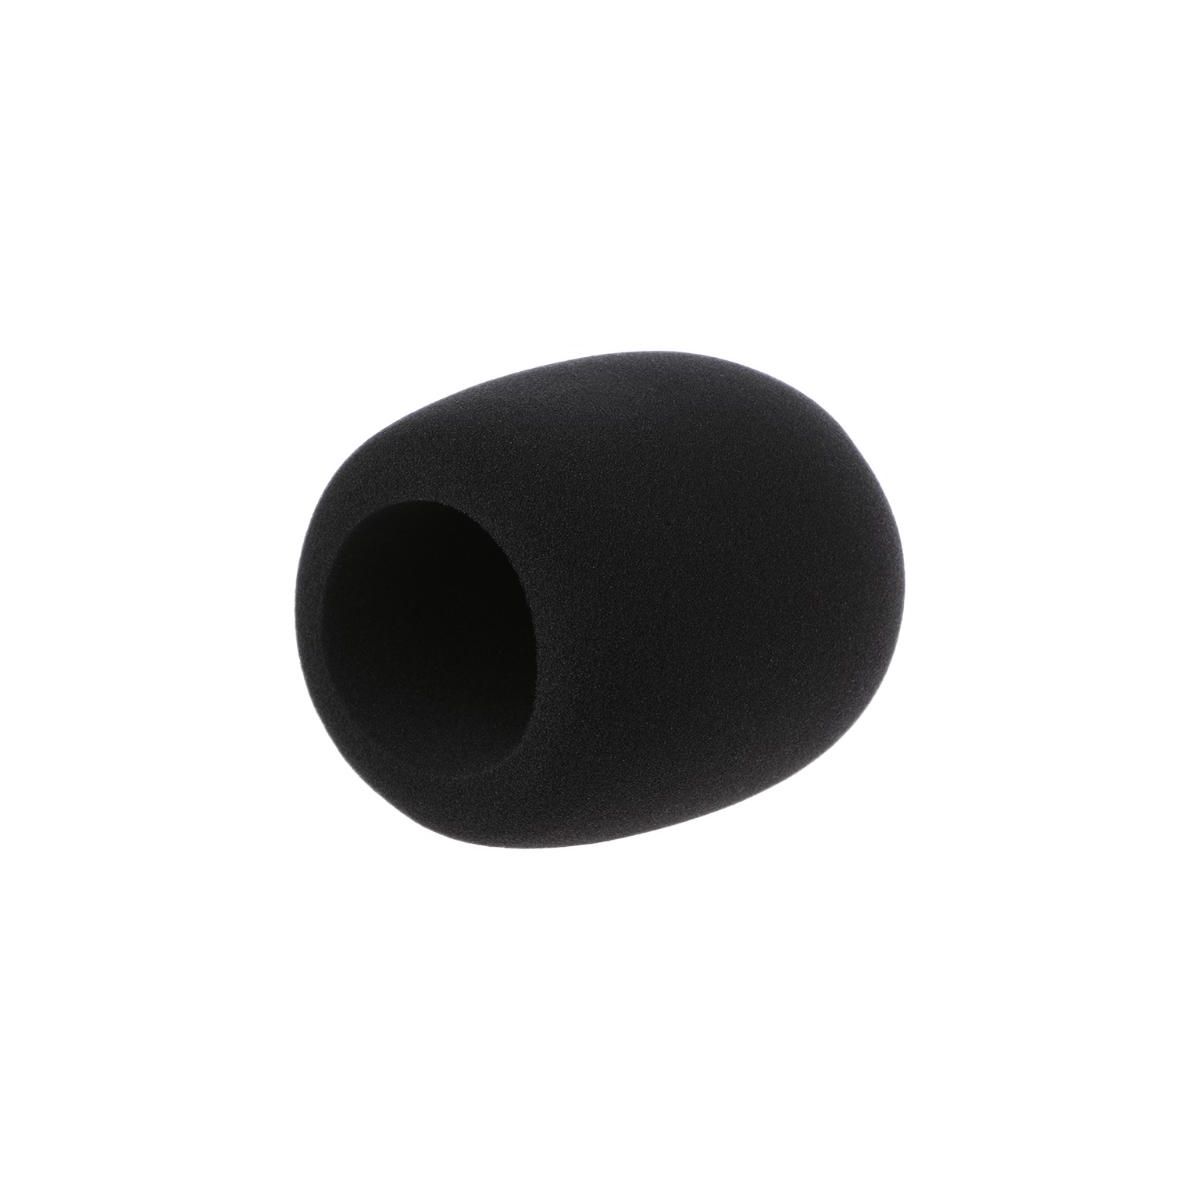 PROEL WS6BK ветрозащита для микрофона. Цвет черный. Высококачественая